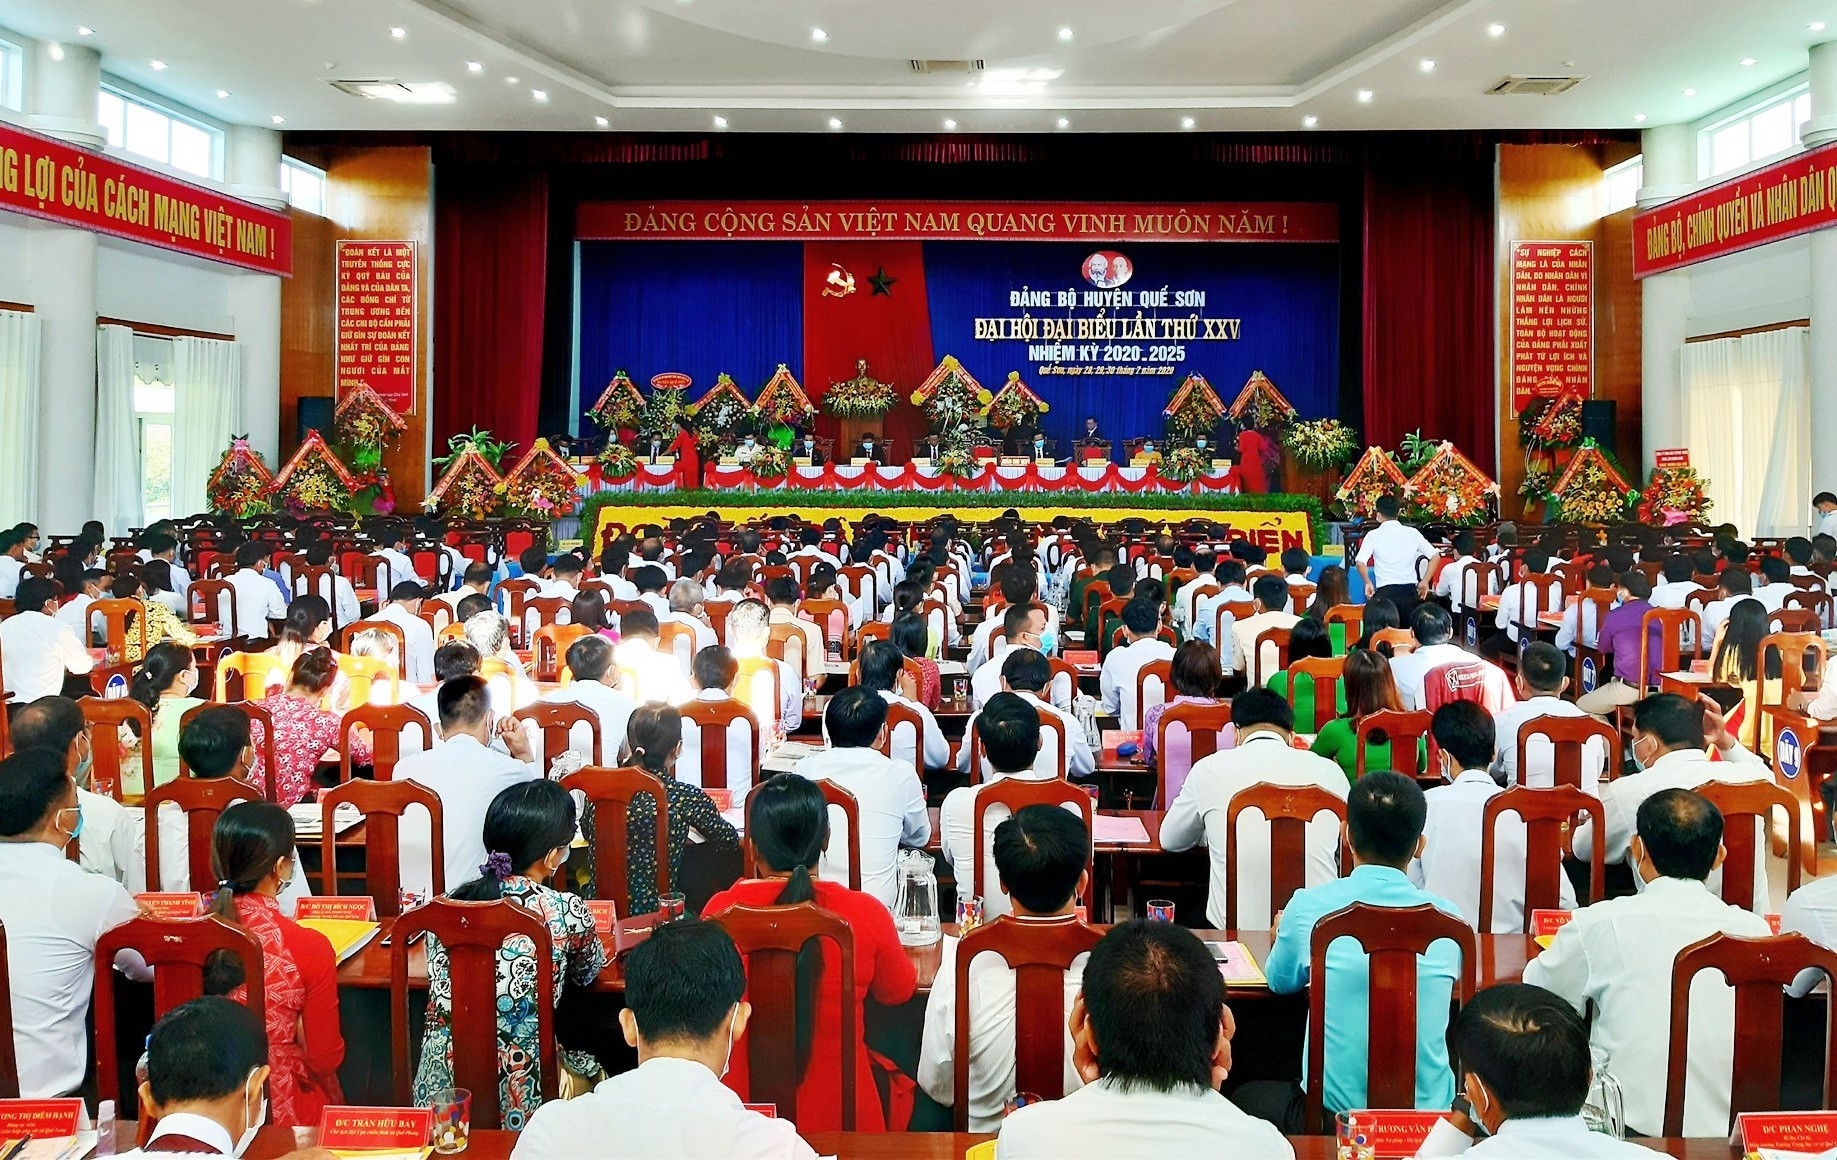 Quang cảnh phiên khai mạc Đại hội đại biểu Đảng bộ huyện Quế Sơn lần thứ XXV (nhiệm kỳ 2020 - 2025) diễn ra sáng nay 29.7. Ảnh: VĂN SỰ